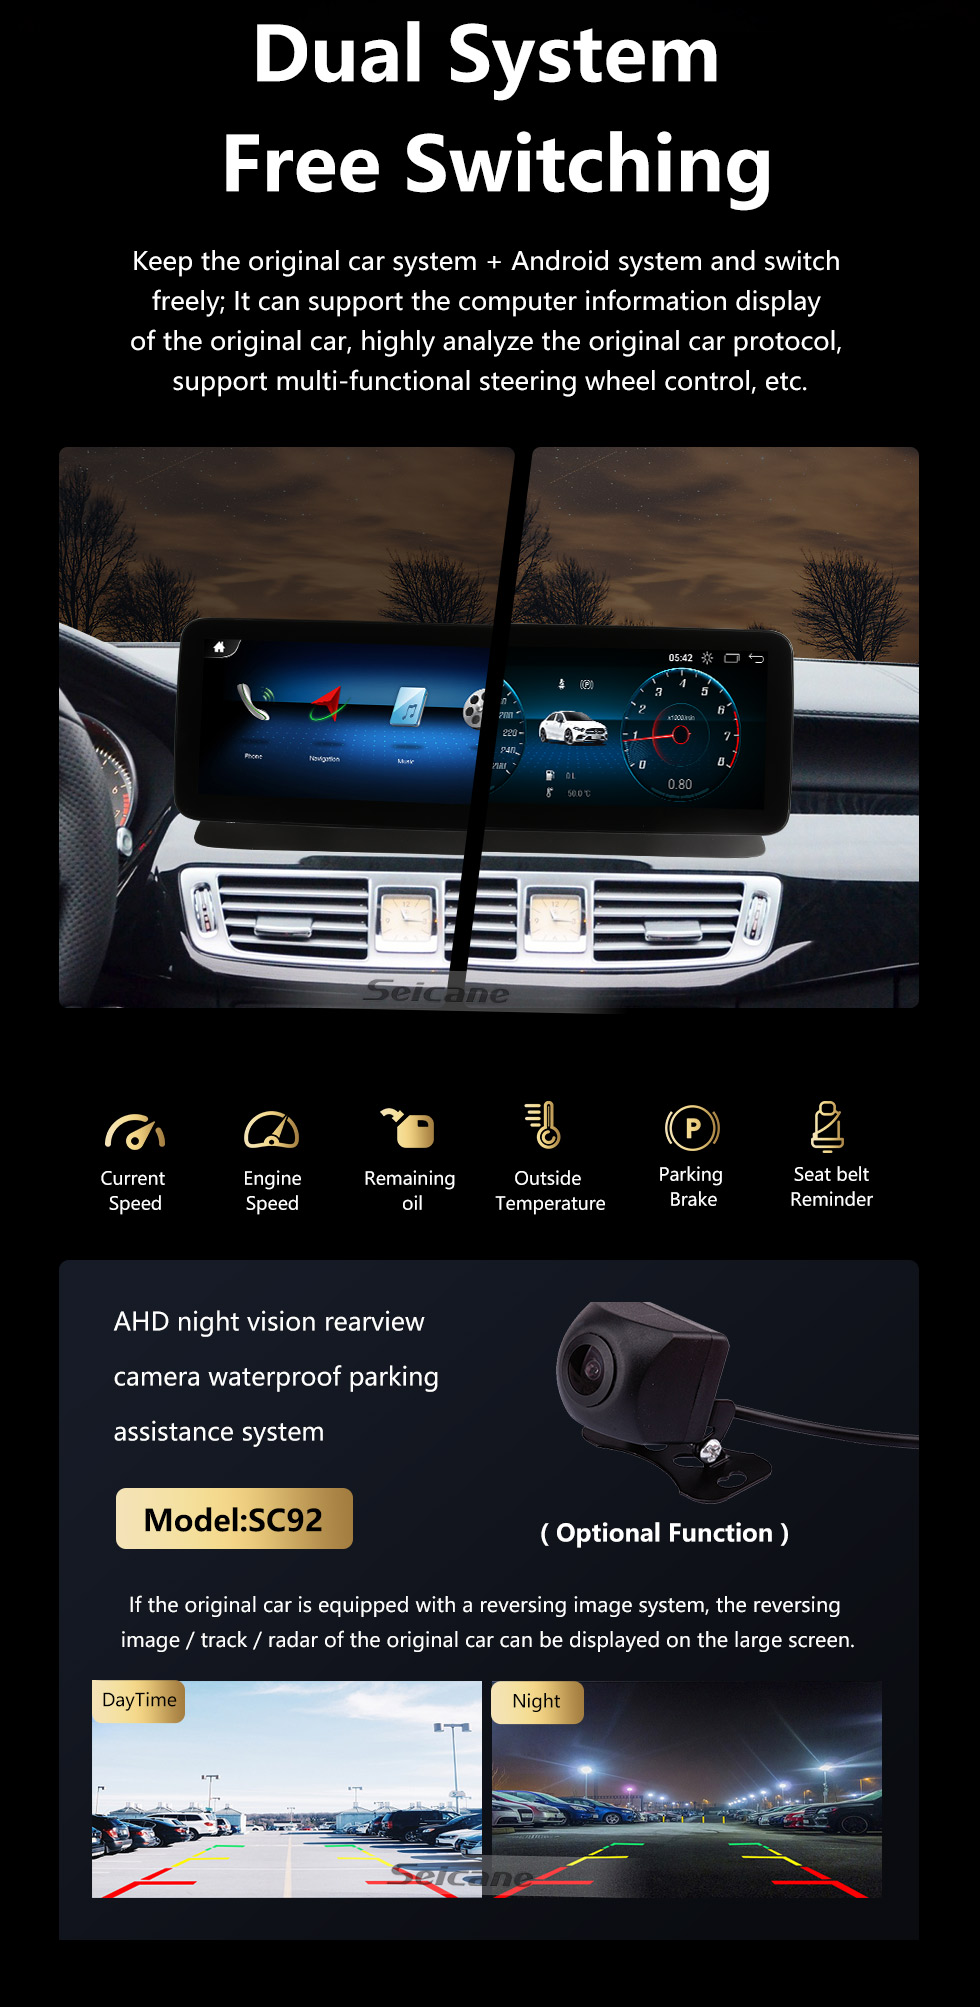 Seicane Carplay 12.3 pulgadas Android 11.0 para 2010-2015 2016 2017 Mercedes CLS W218 CLS300 CLS350CLS 550 CLS250 CLS500 CLS220 CLS320 CLS260 CLS400 Radio Bluetooth Pantalla táctil Sistema de navegación GPS